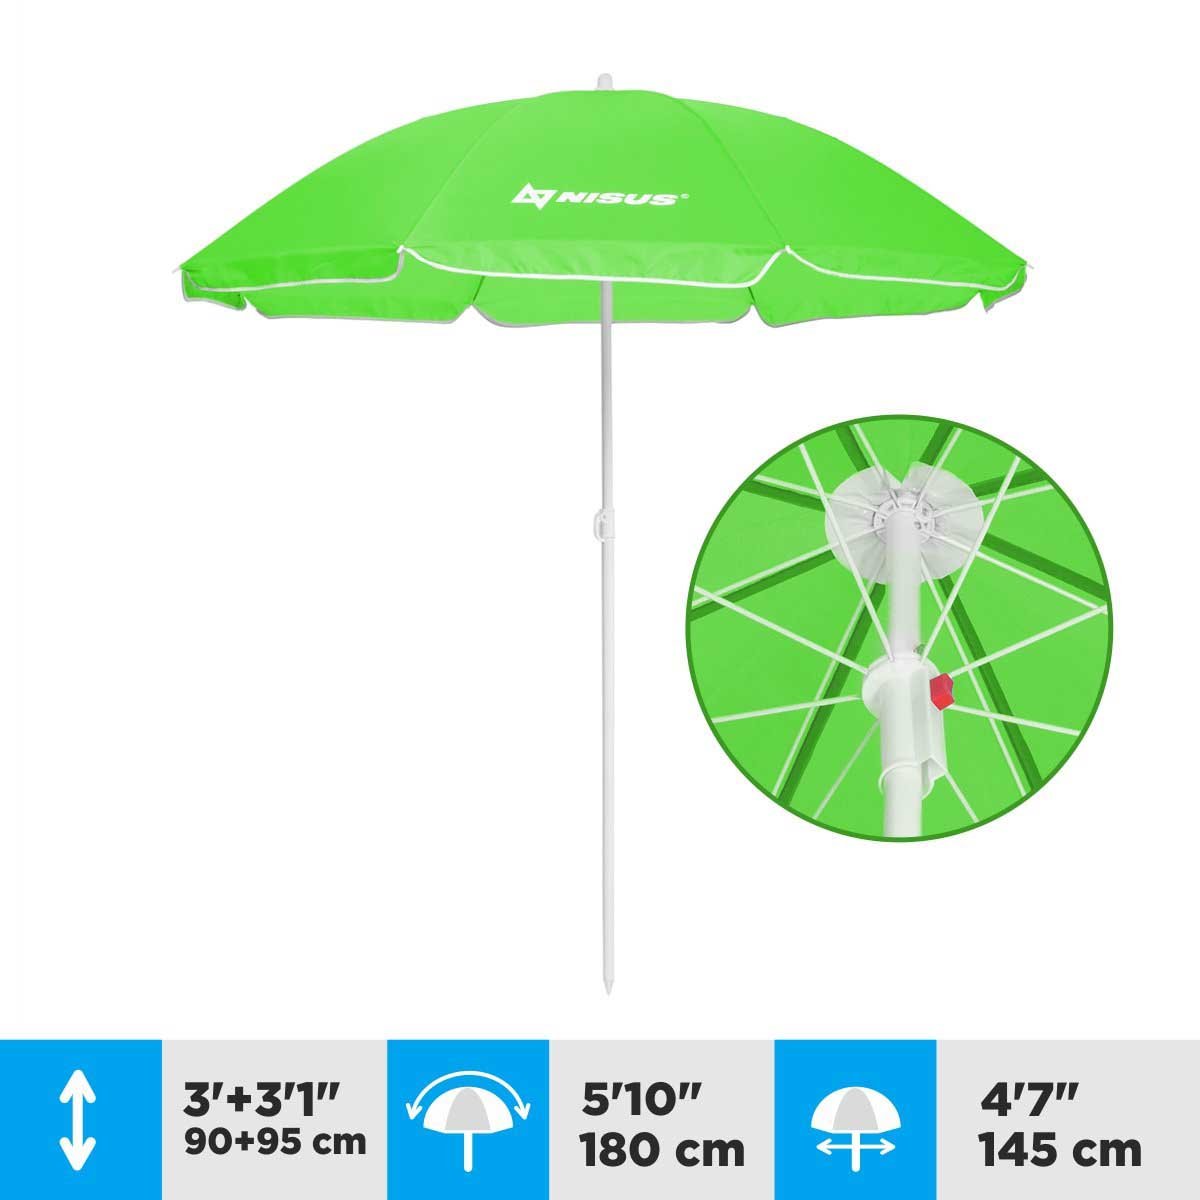 A 4.7 ft Green Tilting Beach Umbrella is 6.1 feet high